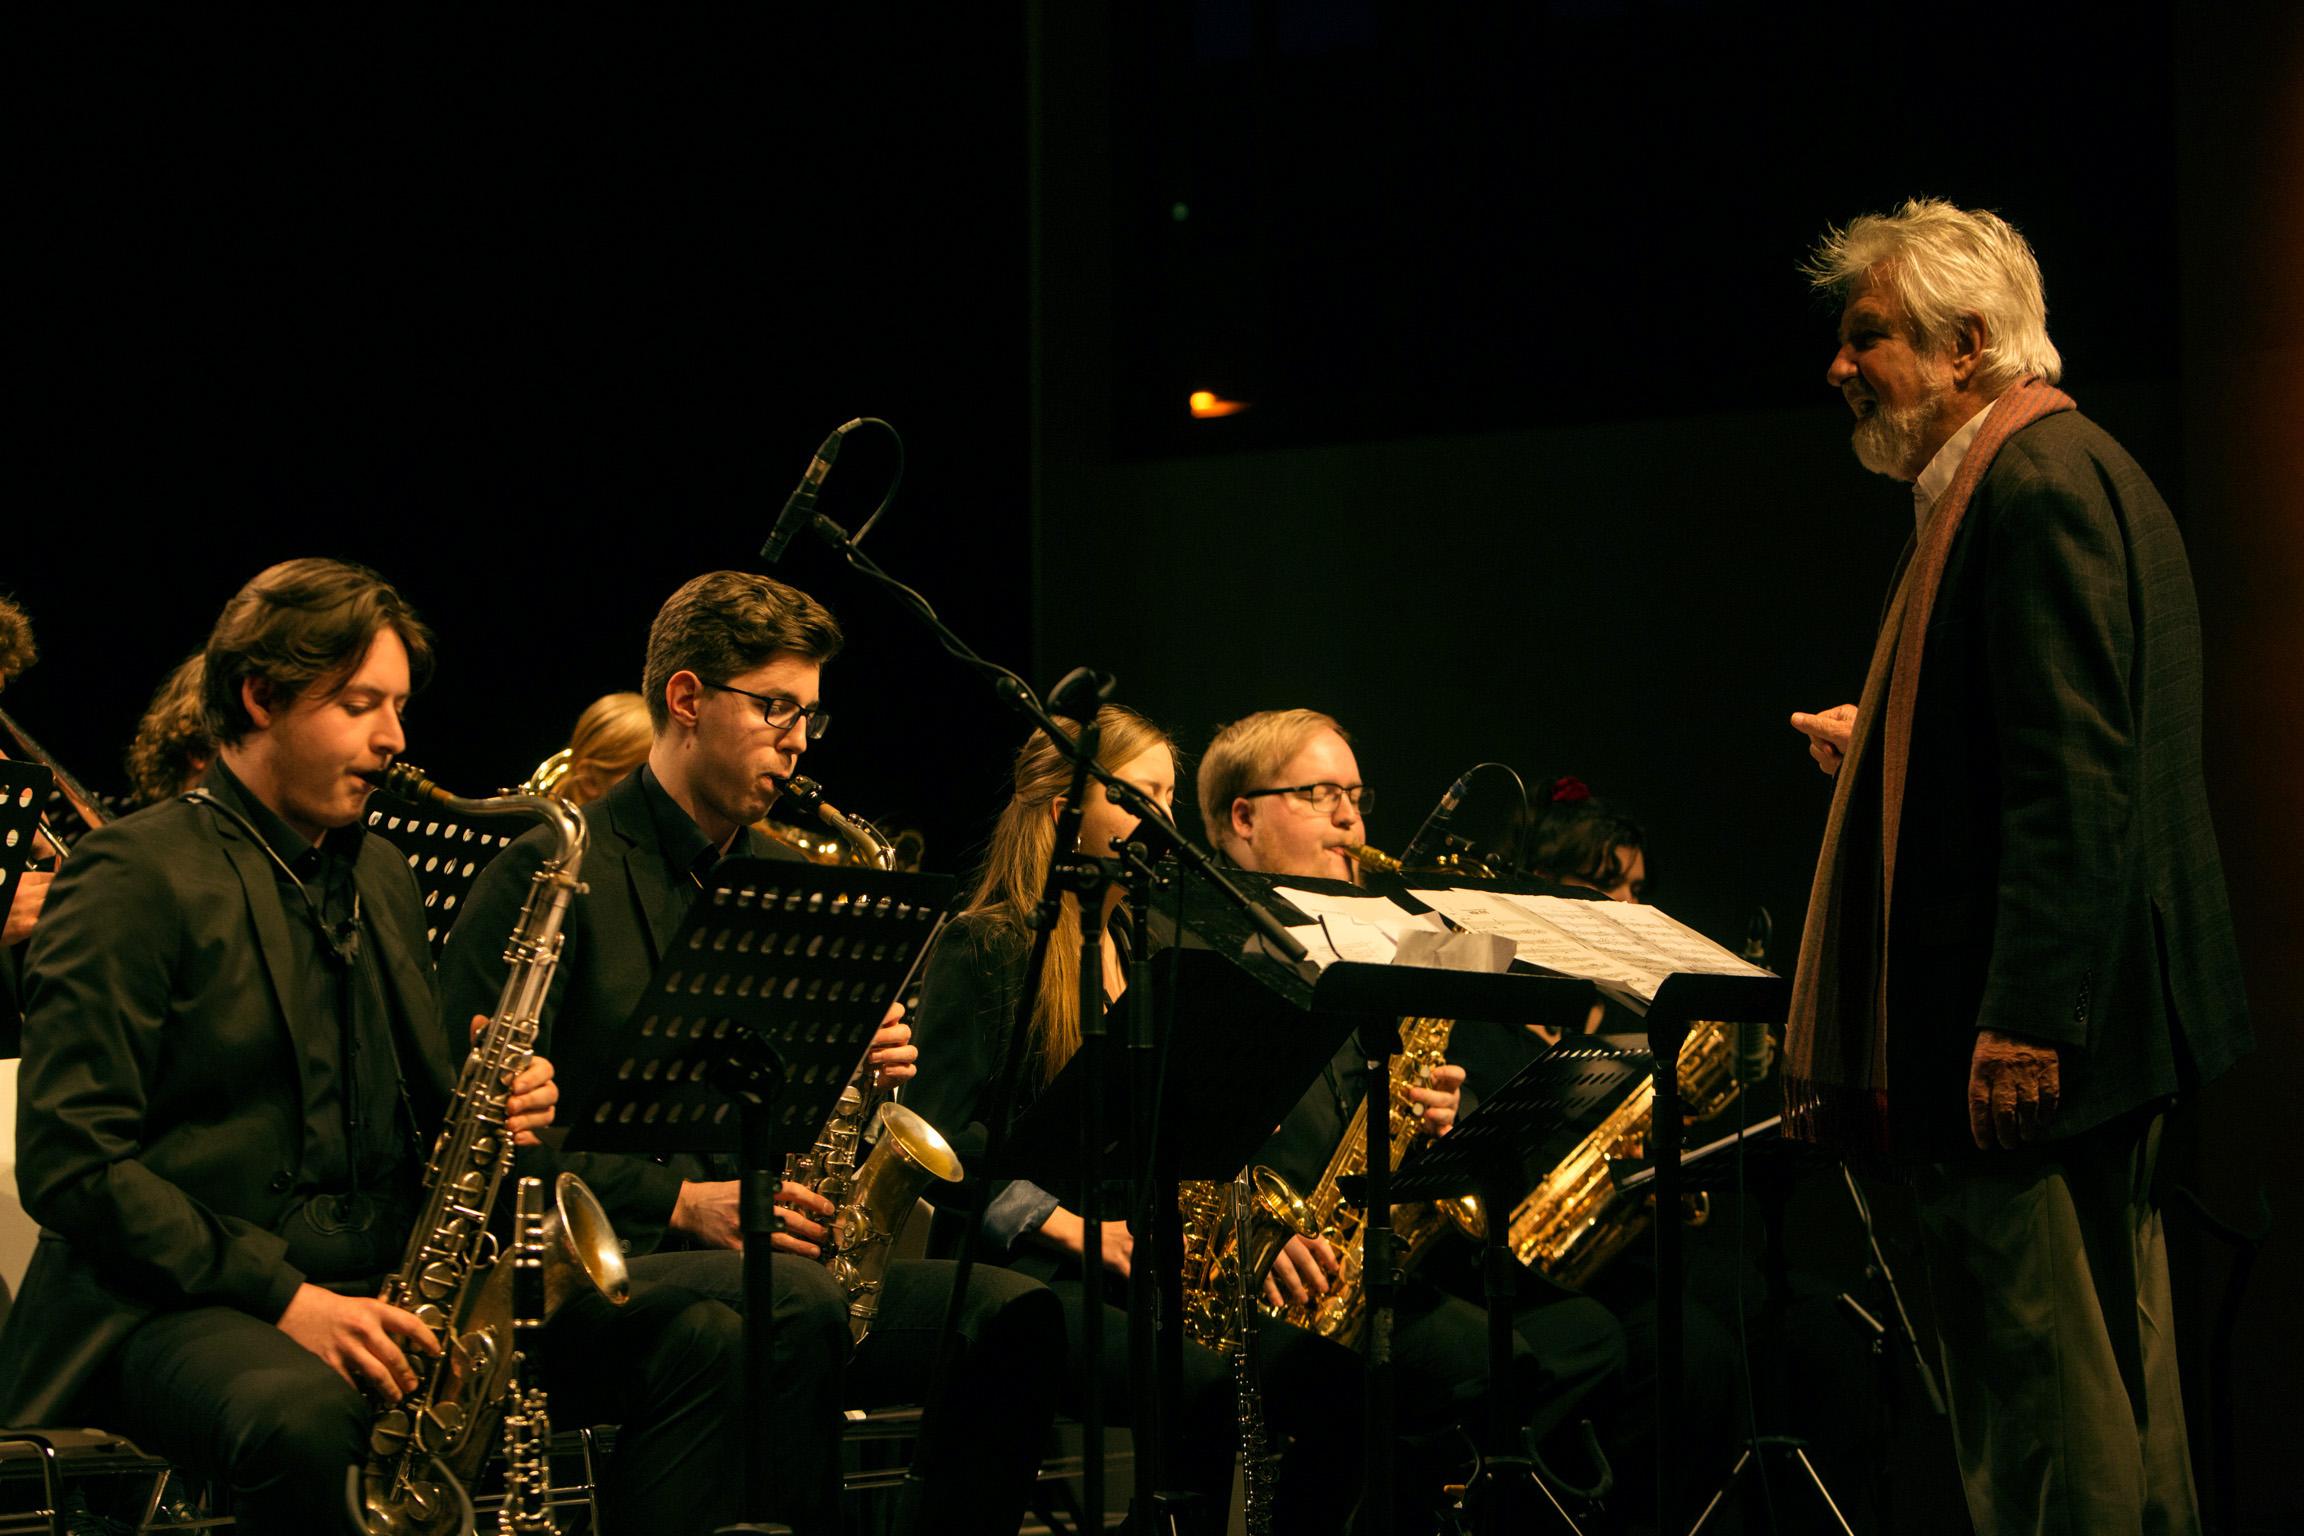 Blick auf musizierende Saxofonisten, der künstlerische Leiter Jiggs Whigham dirigiert während des LaJJazzO Konzerts in Potsdam